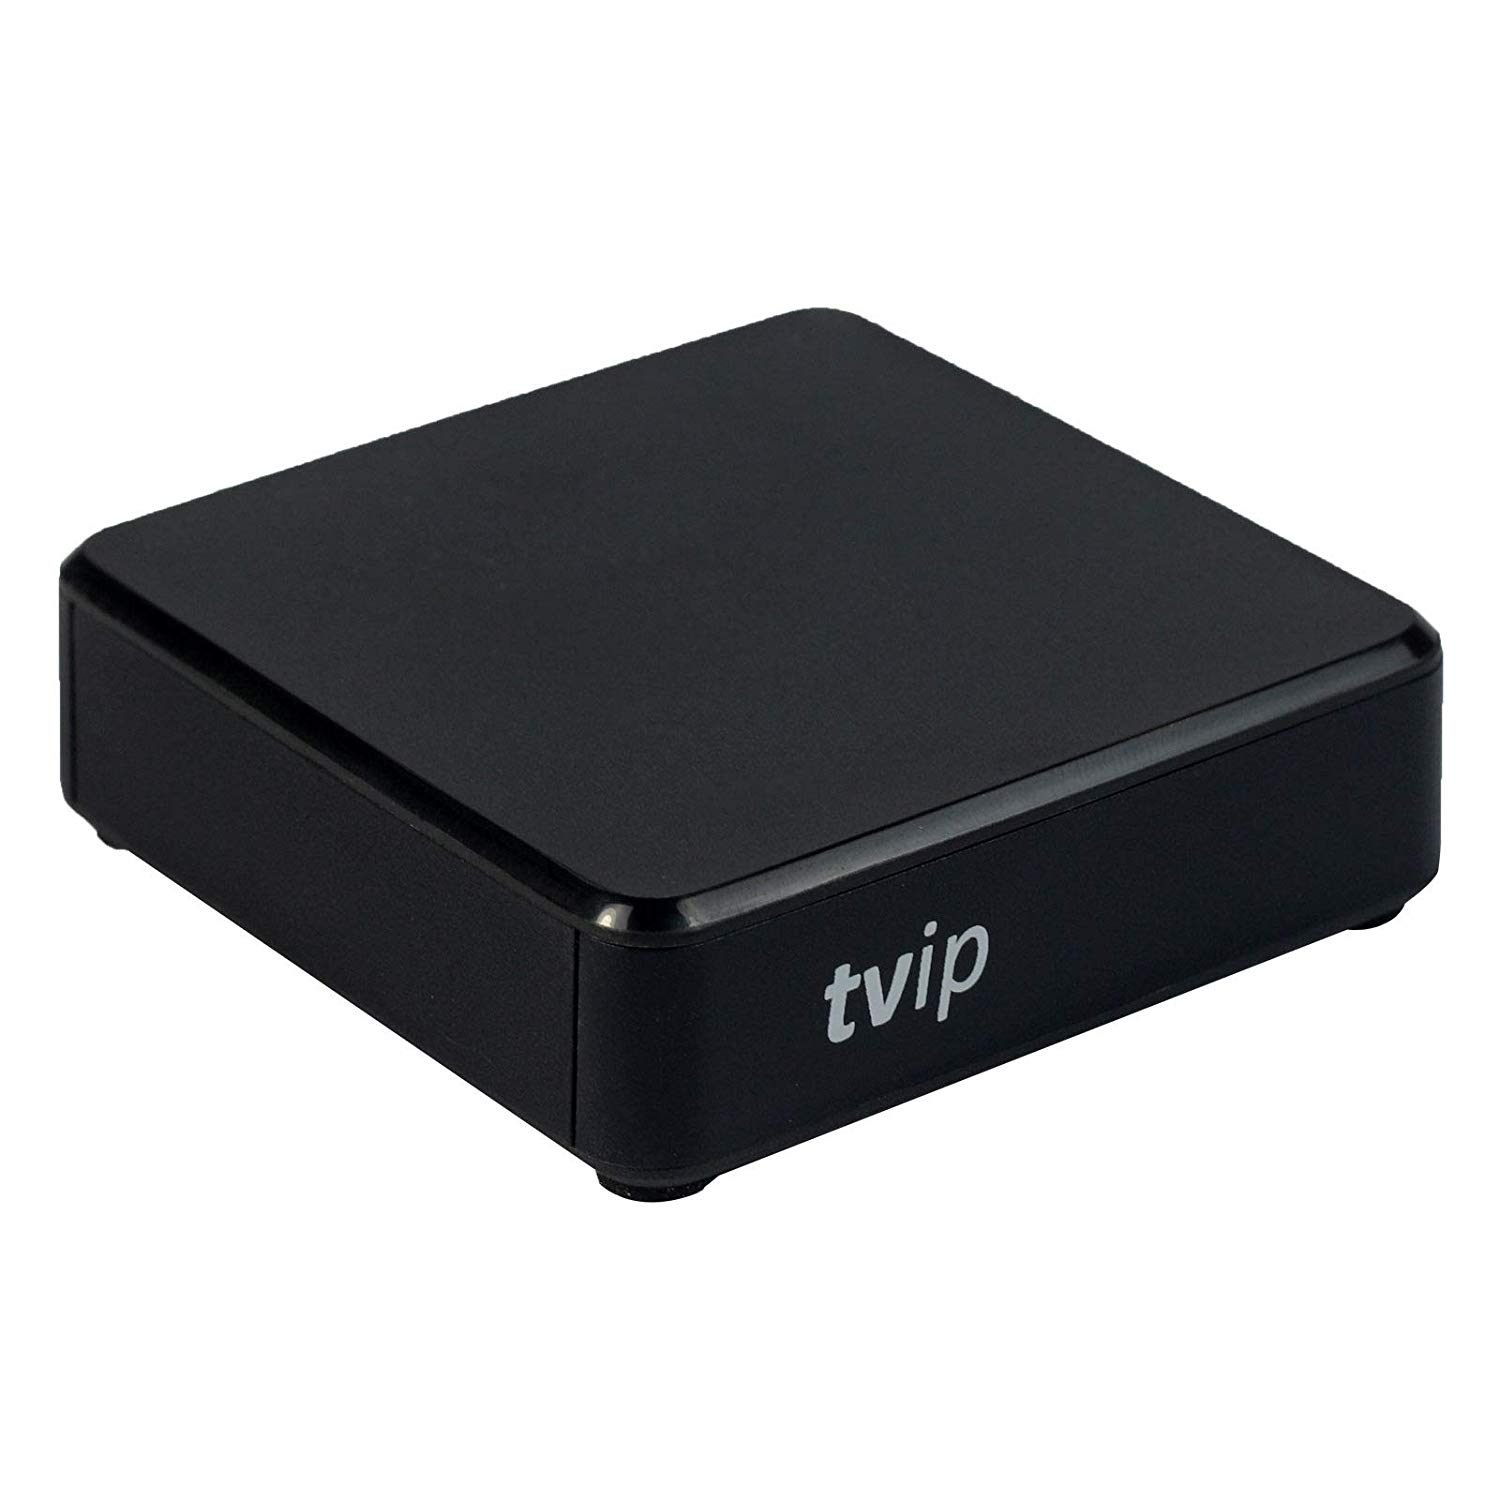 TVIP S-Box v.415se IPTV/OTT Media Player 2.4/5GHz WLAN